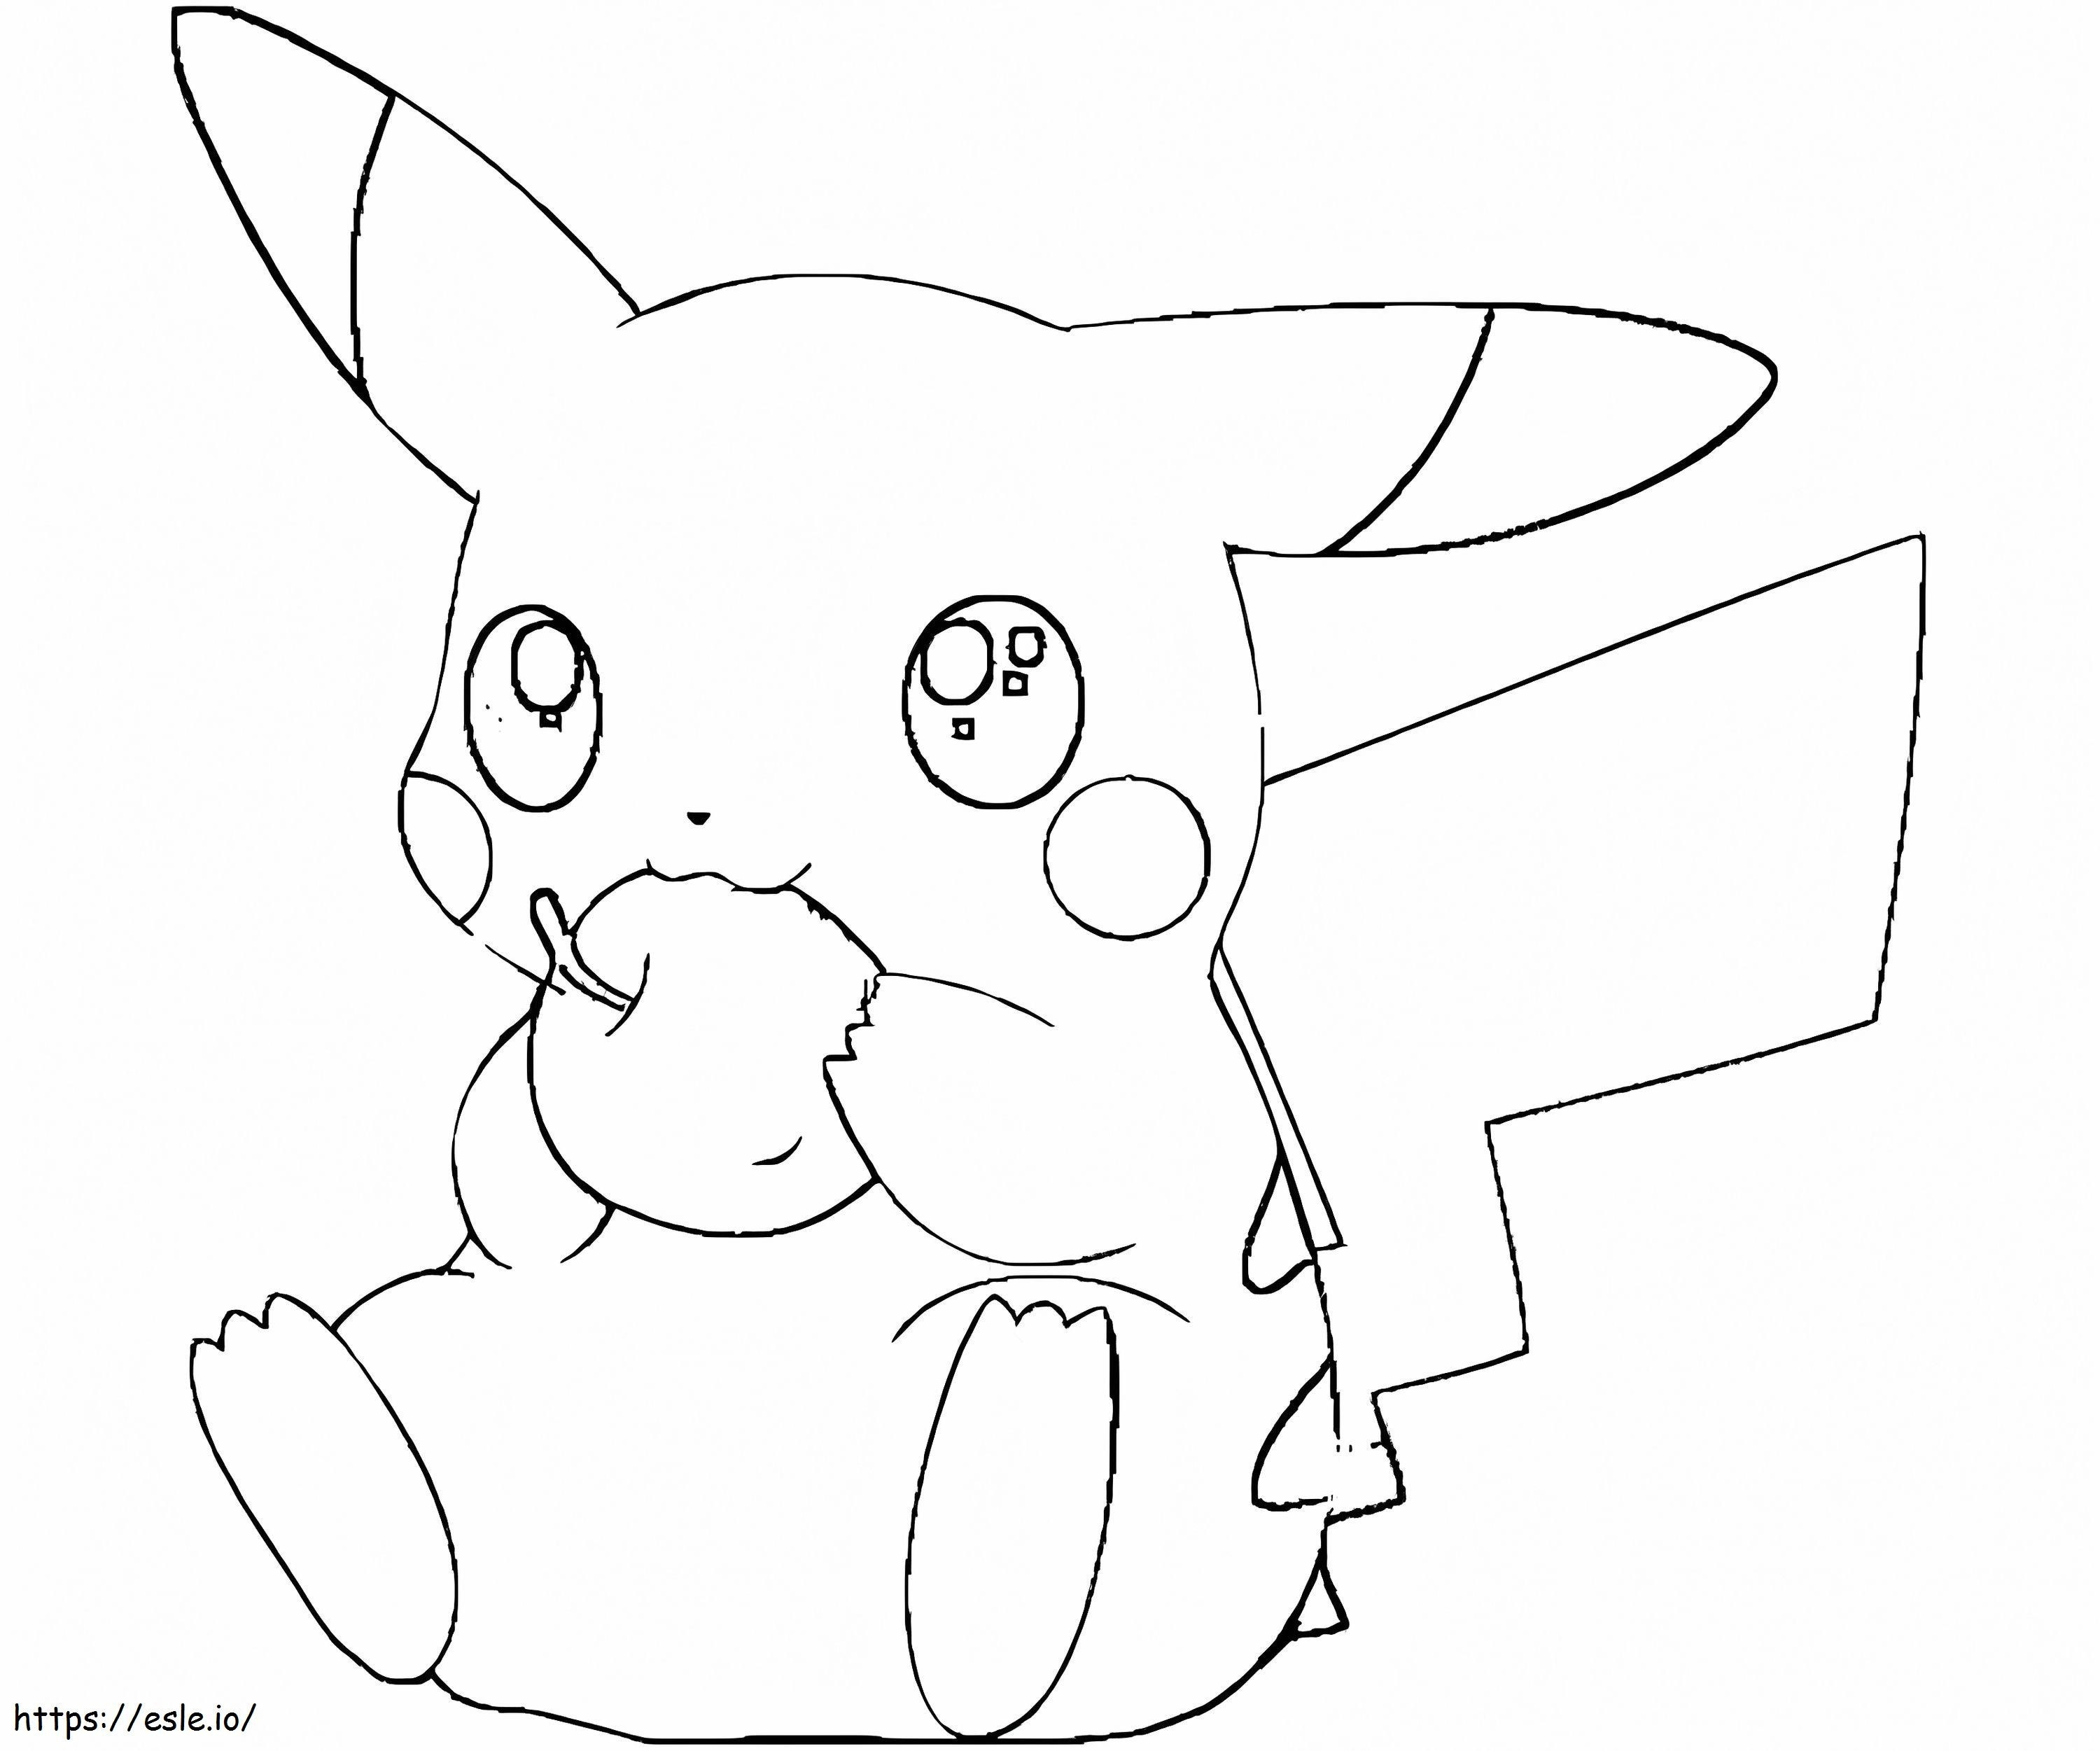 Pikachu Oturup Elma Yiyor boyama